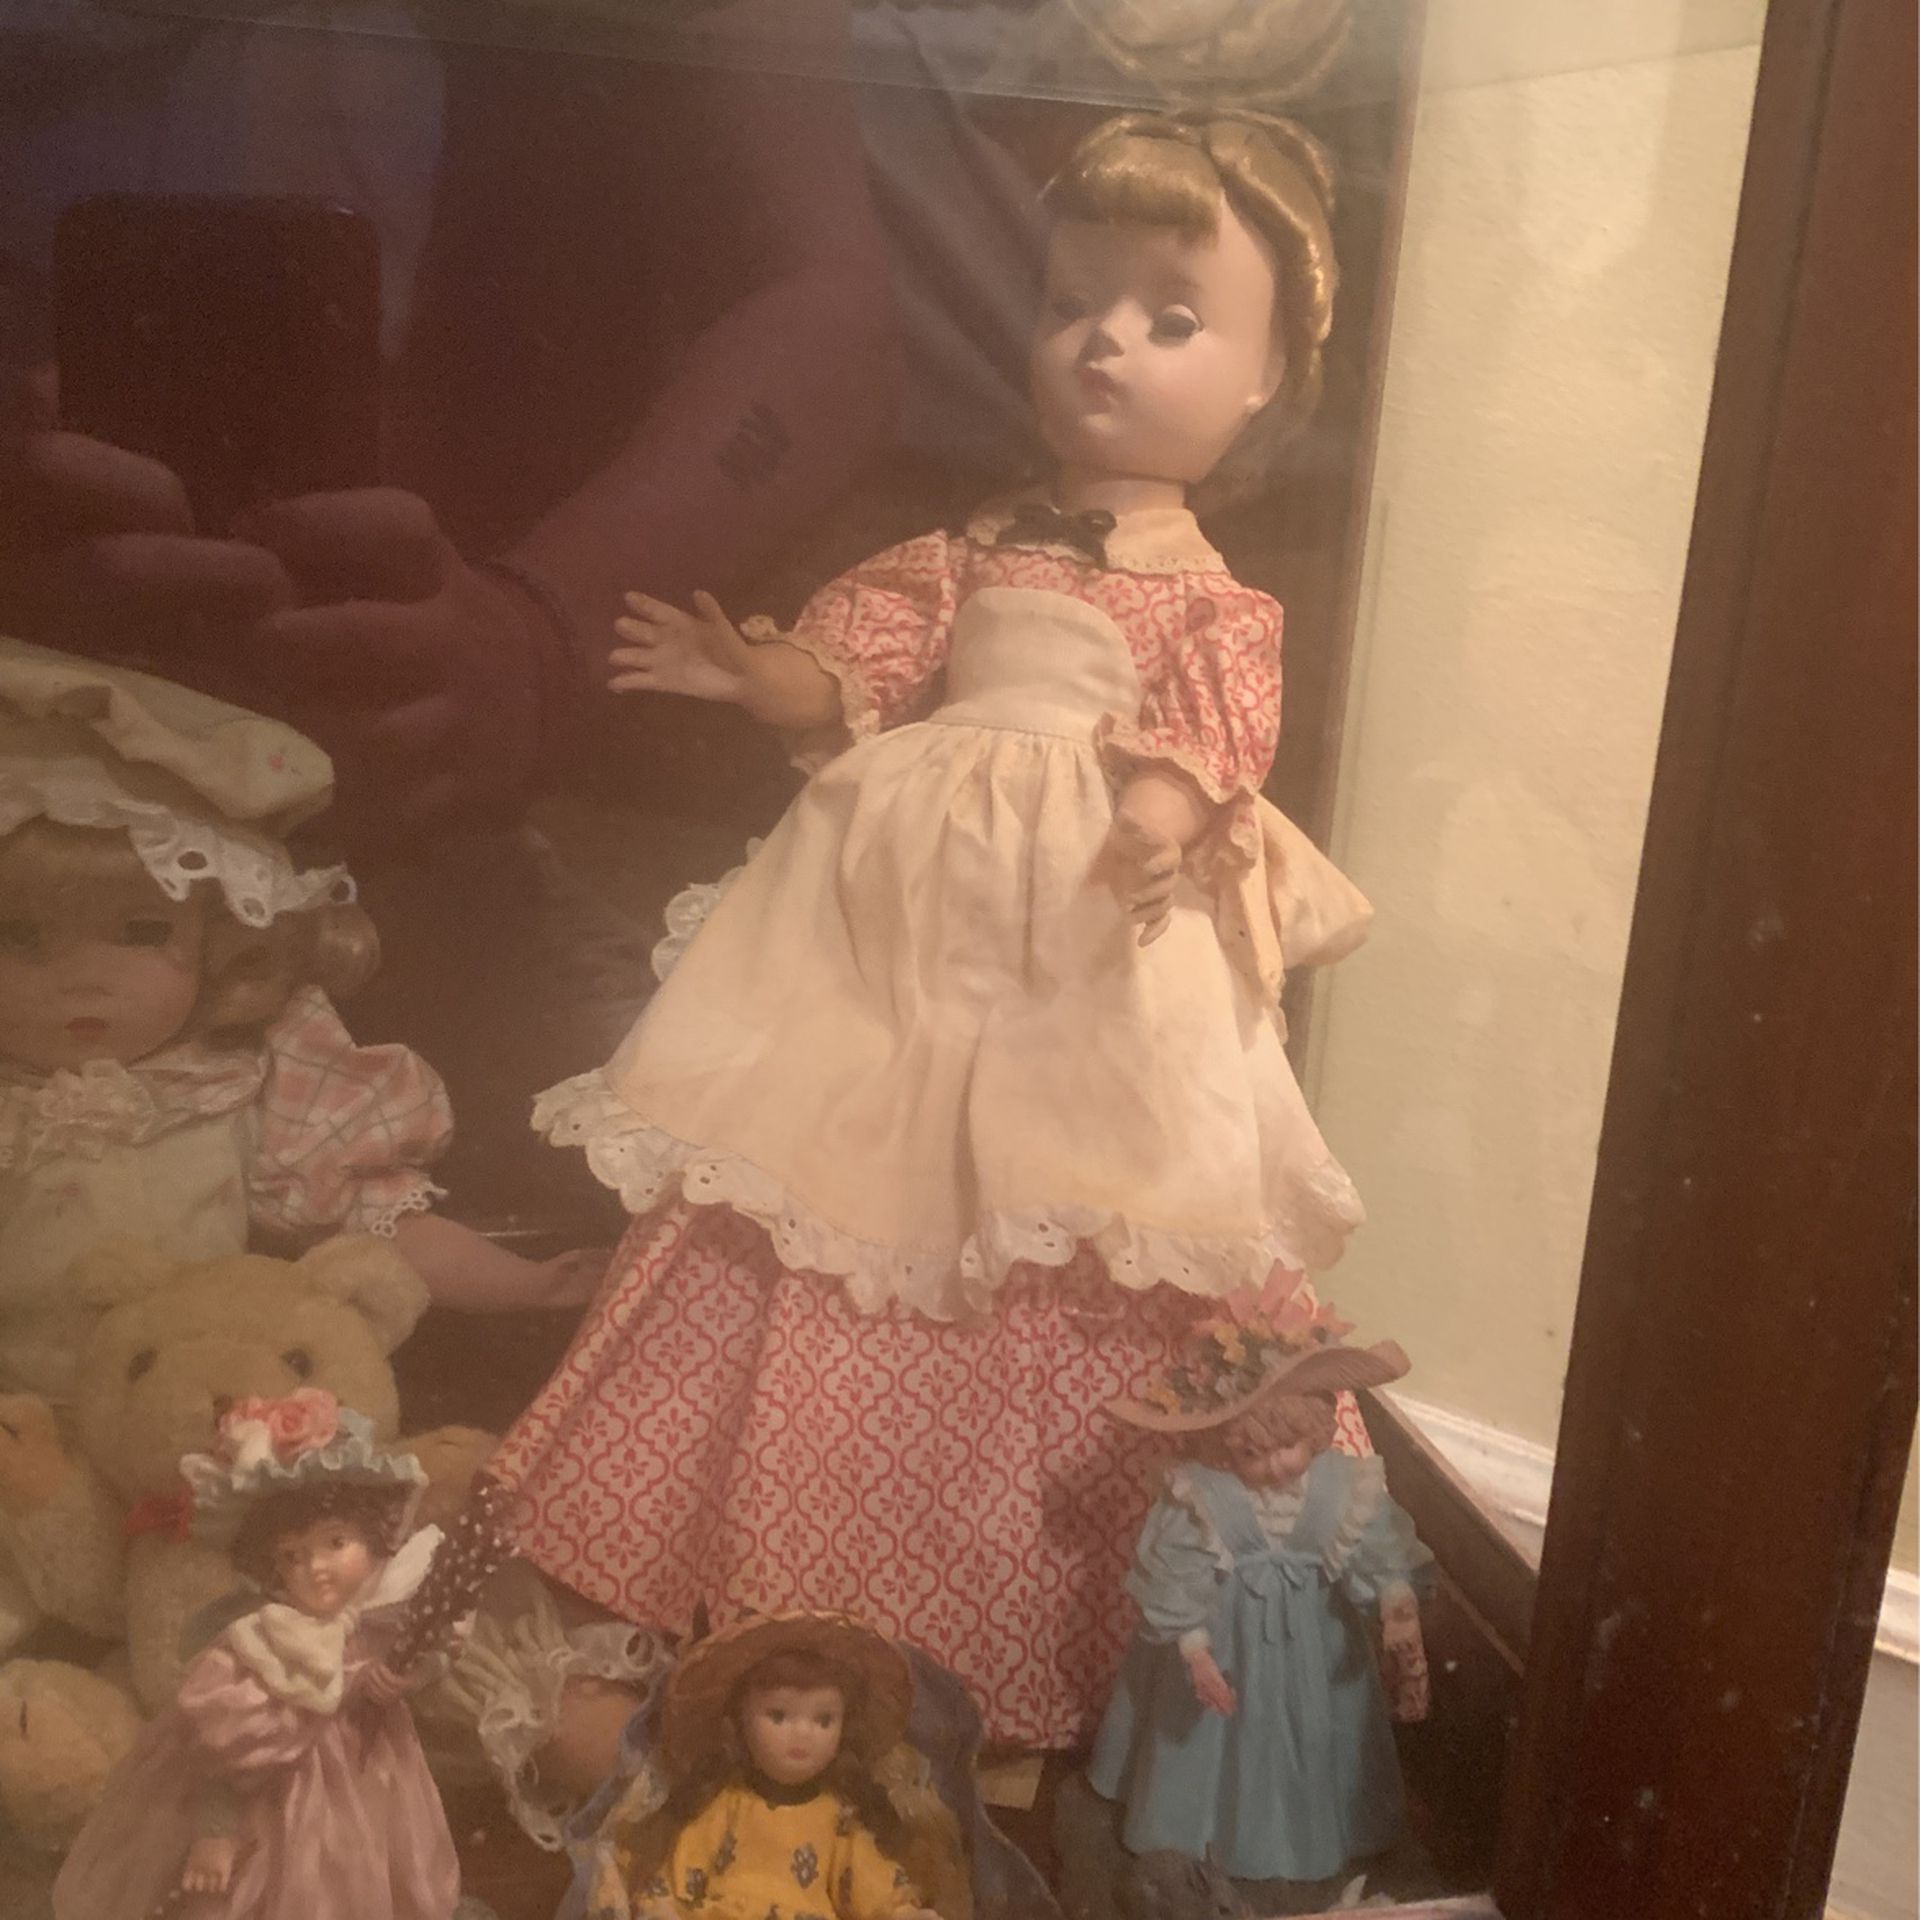 Antique Dolls